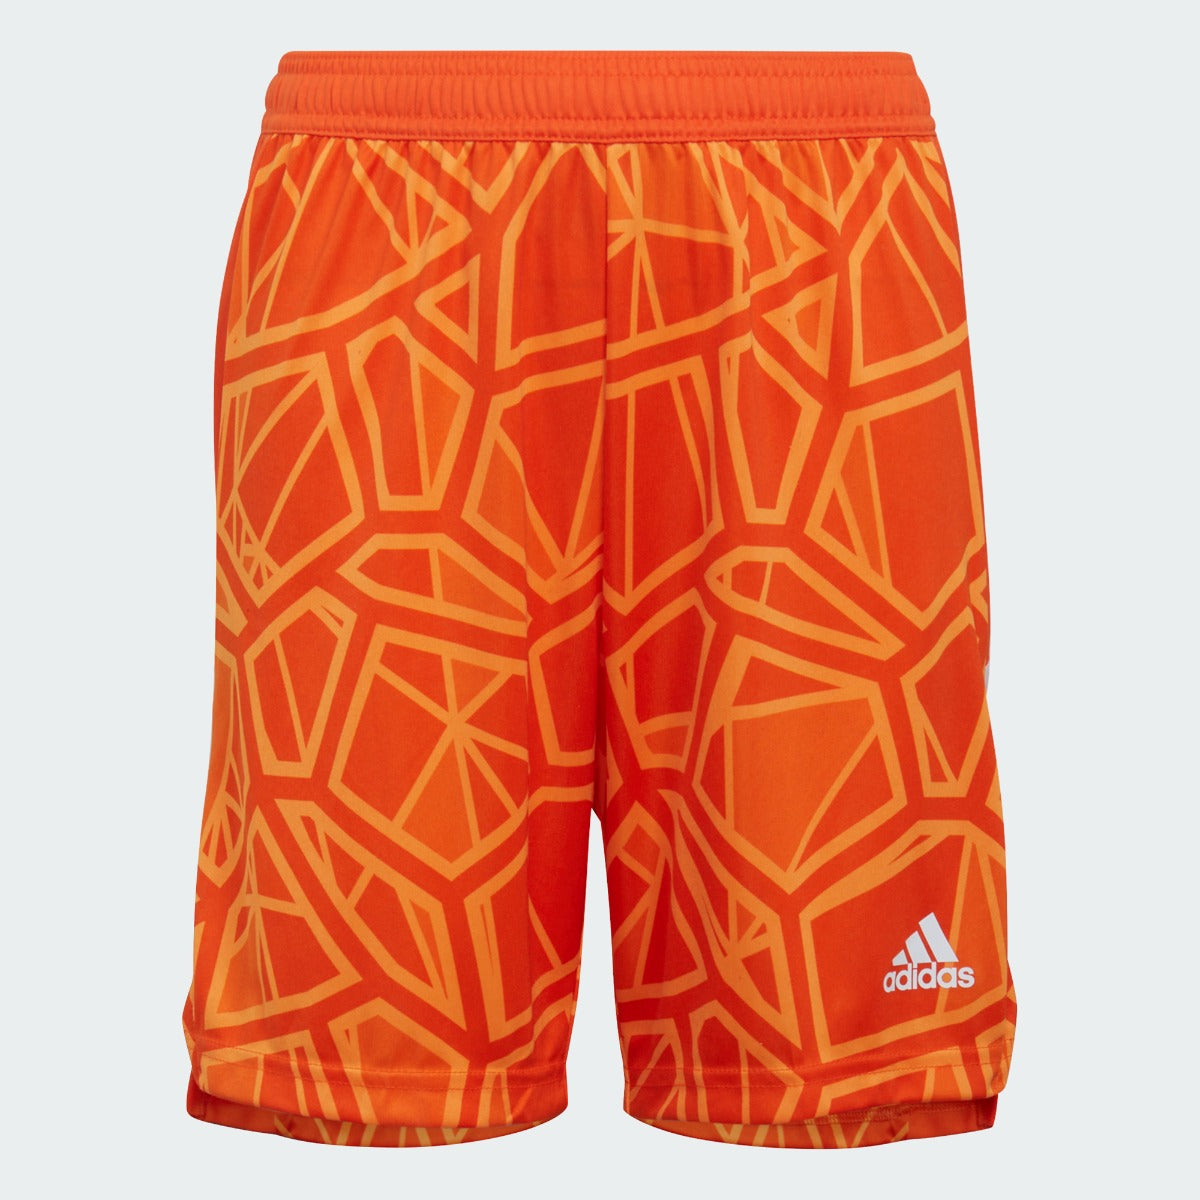 adidas Condivo 22 Youth Goalkeeper Shorts - Orange